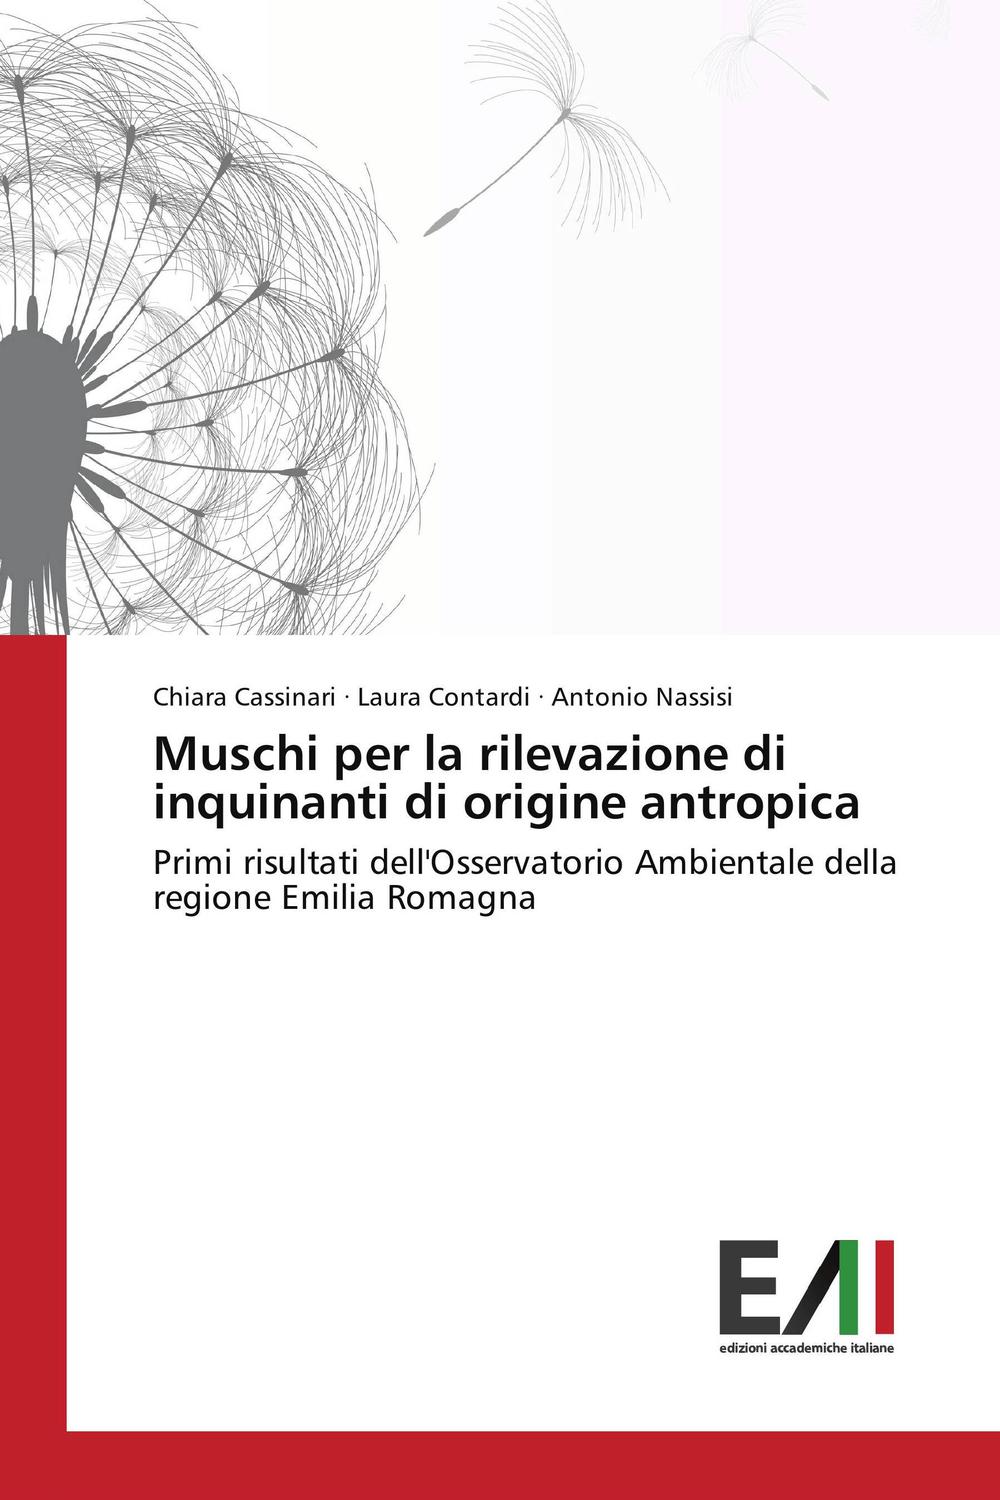 Muschi per la rilevazione di inquinanti di origine antropica - Chiara Cassinari, Laura Contardi, Antonio Nassisi